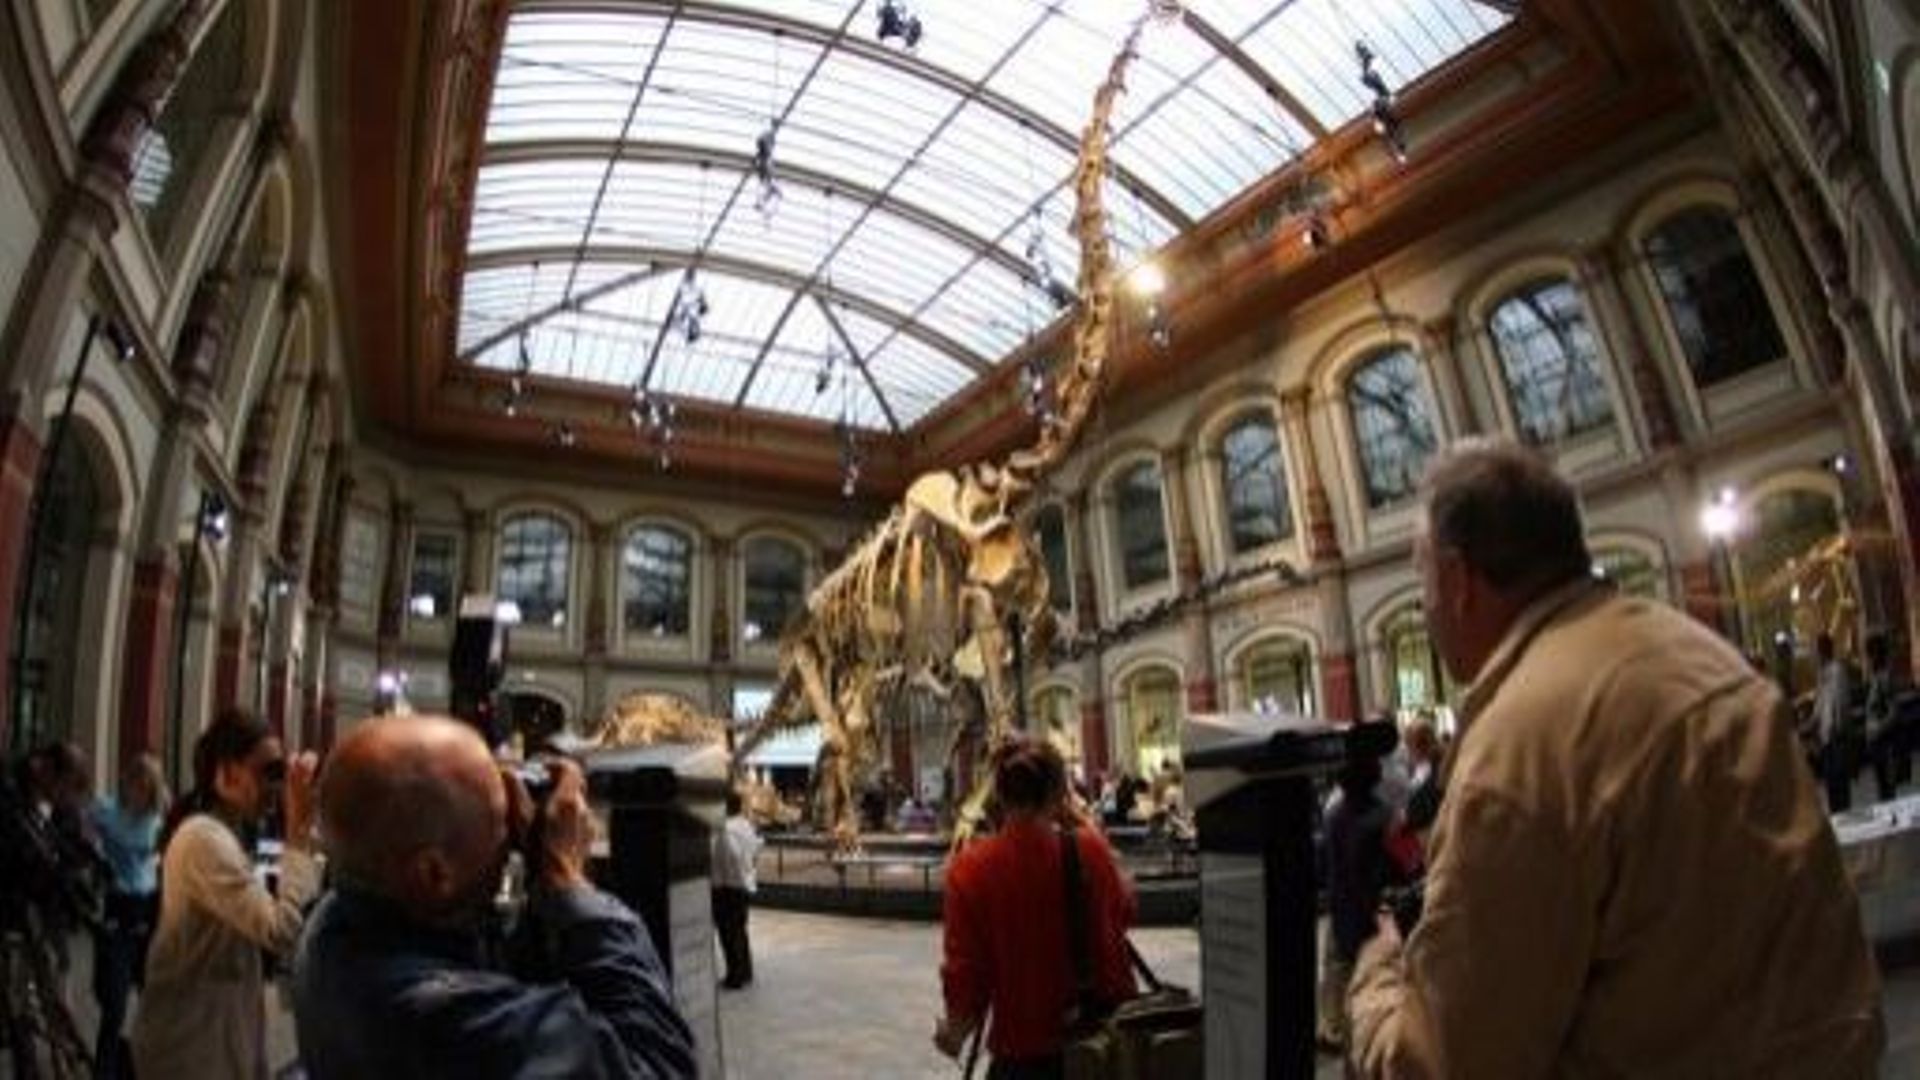 Le squelette d'un brachiosaure exposé au musée d'Histoire naturelle de Berlin